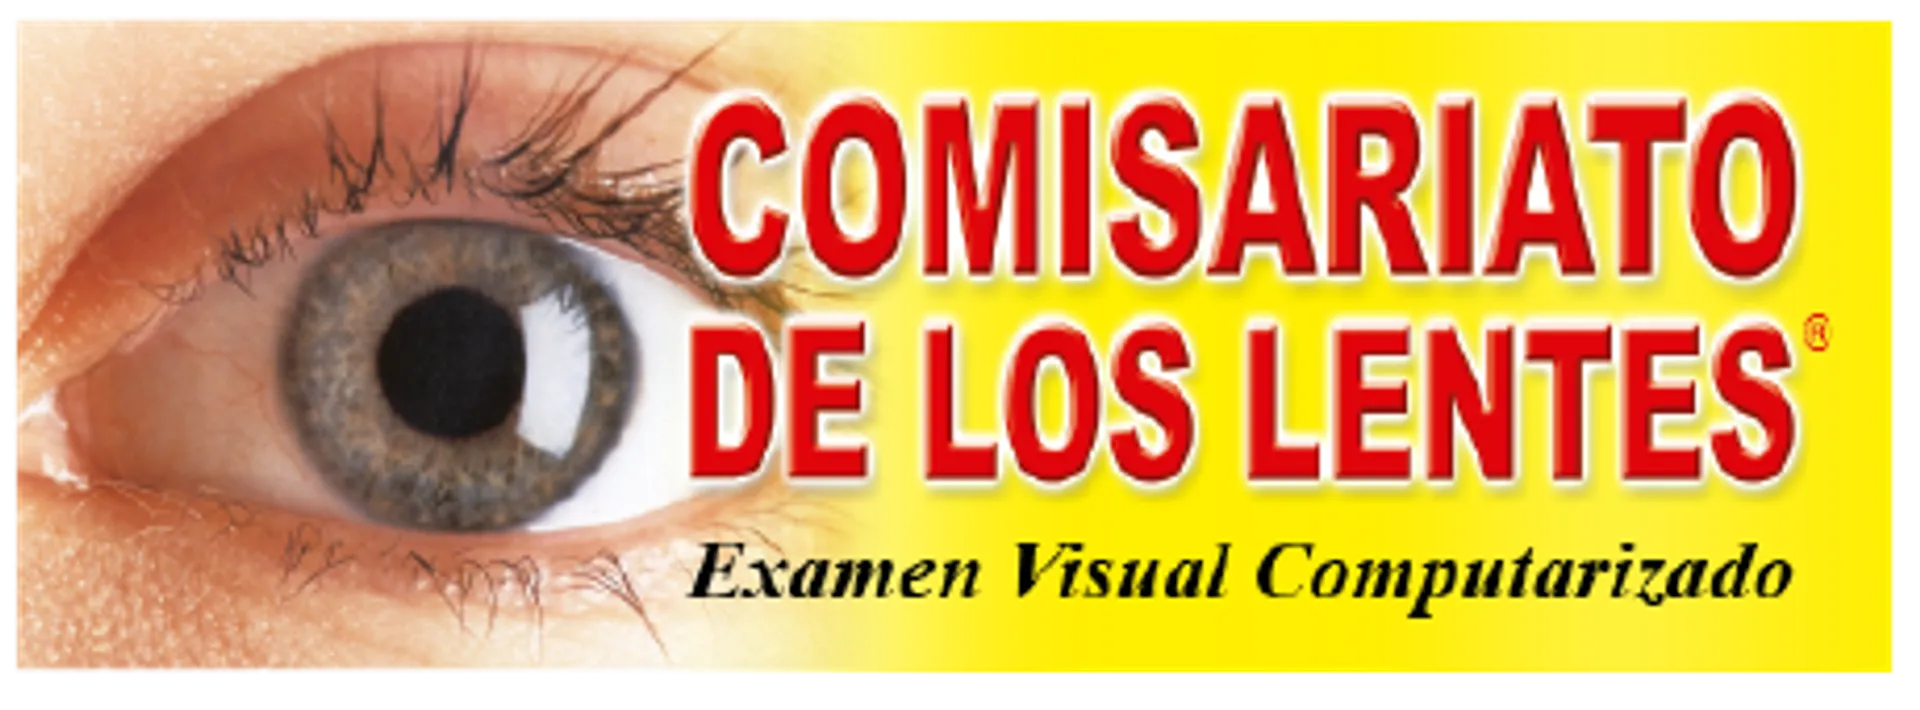 COMISARIATO DE LOS LENTES logo